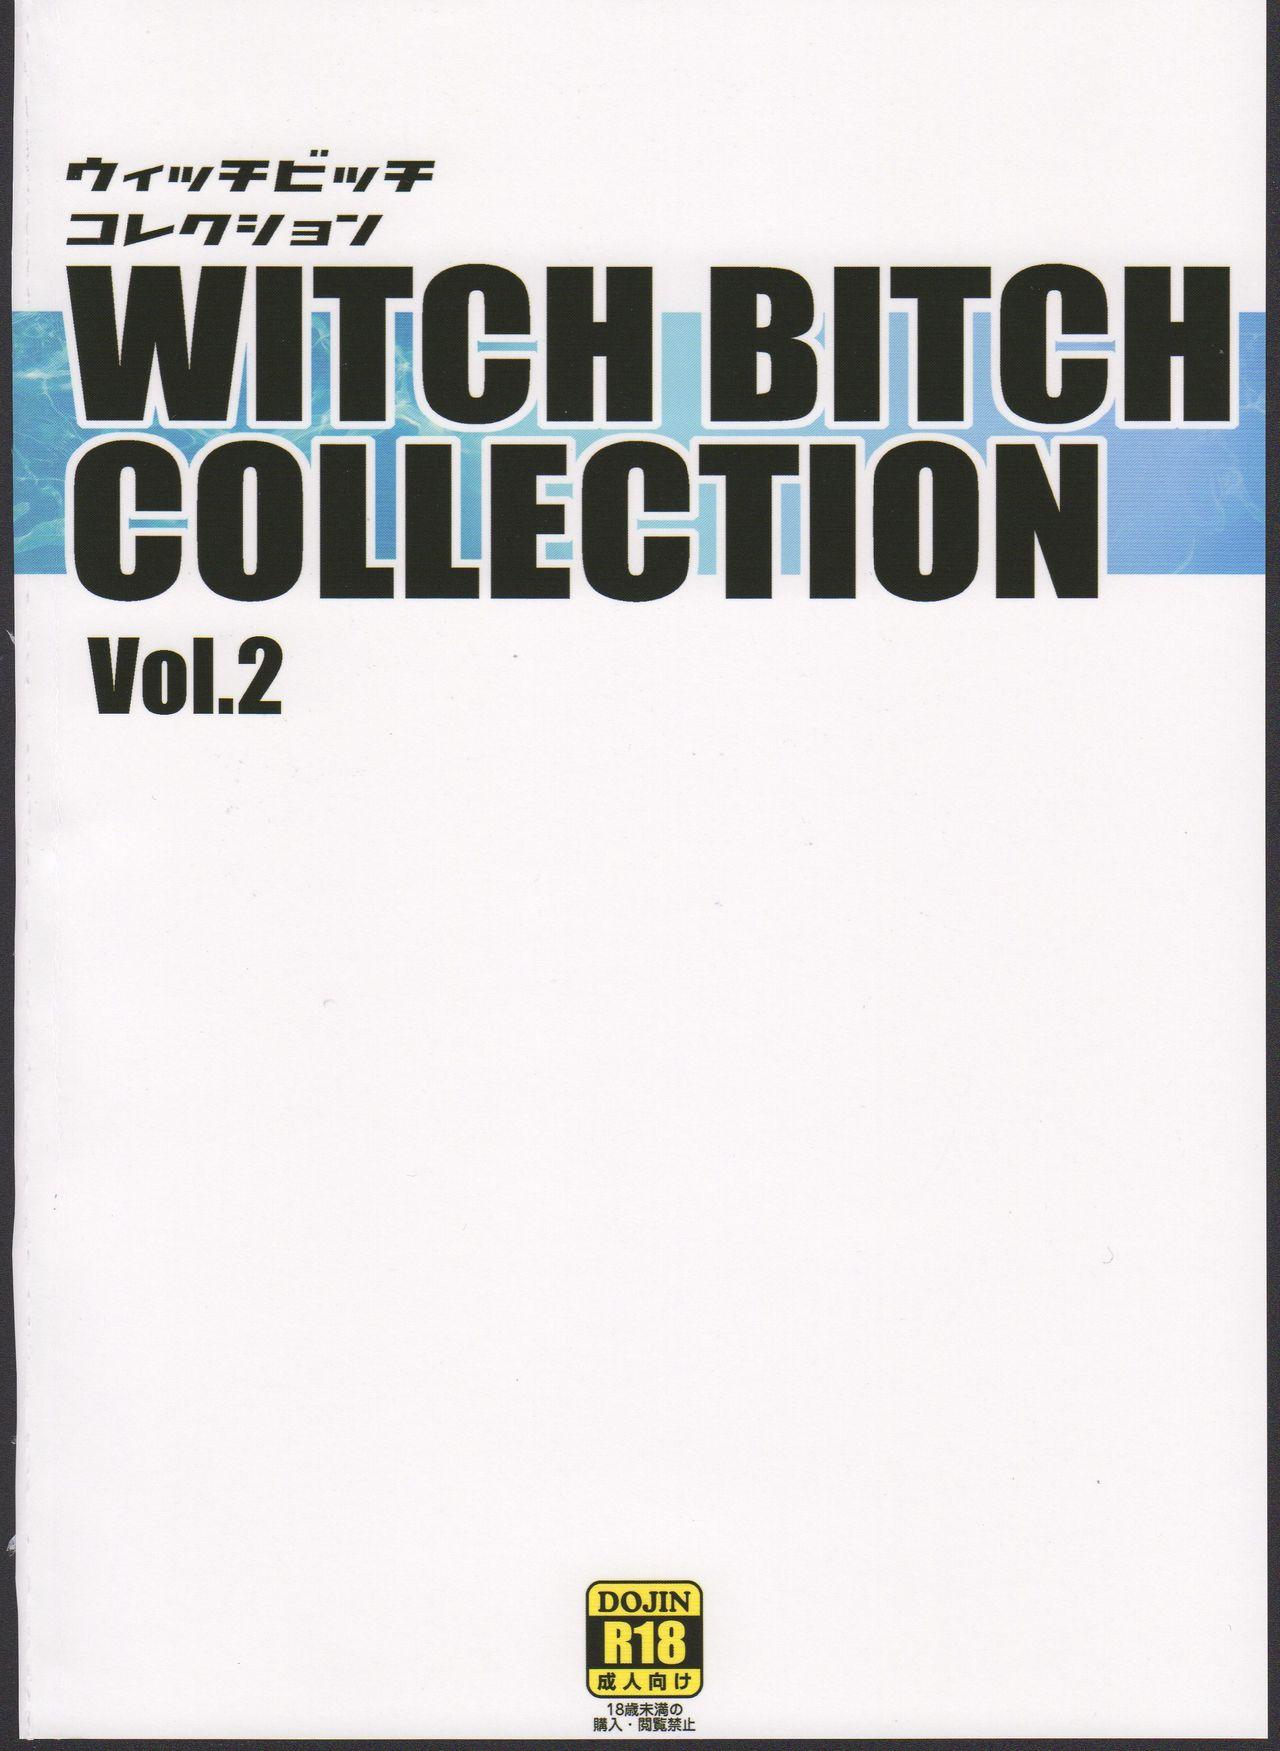 Chichikko Bitch 3 - Witch Bitch Collection Vol.2 Version 24